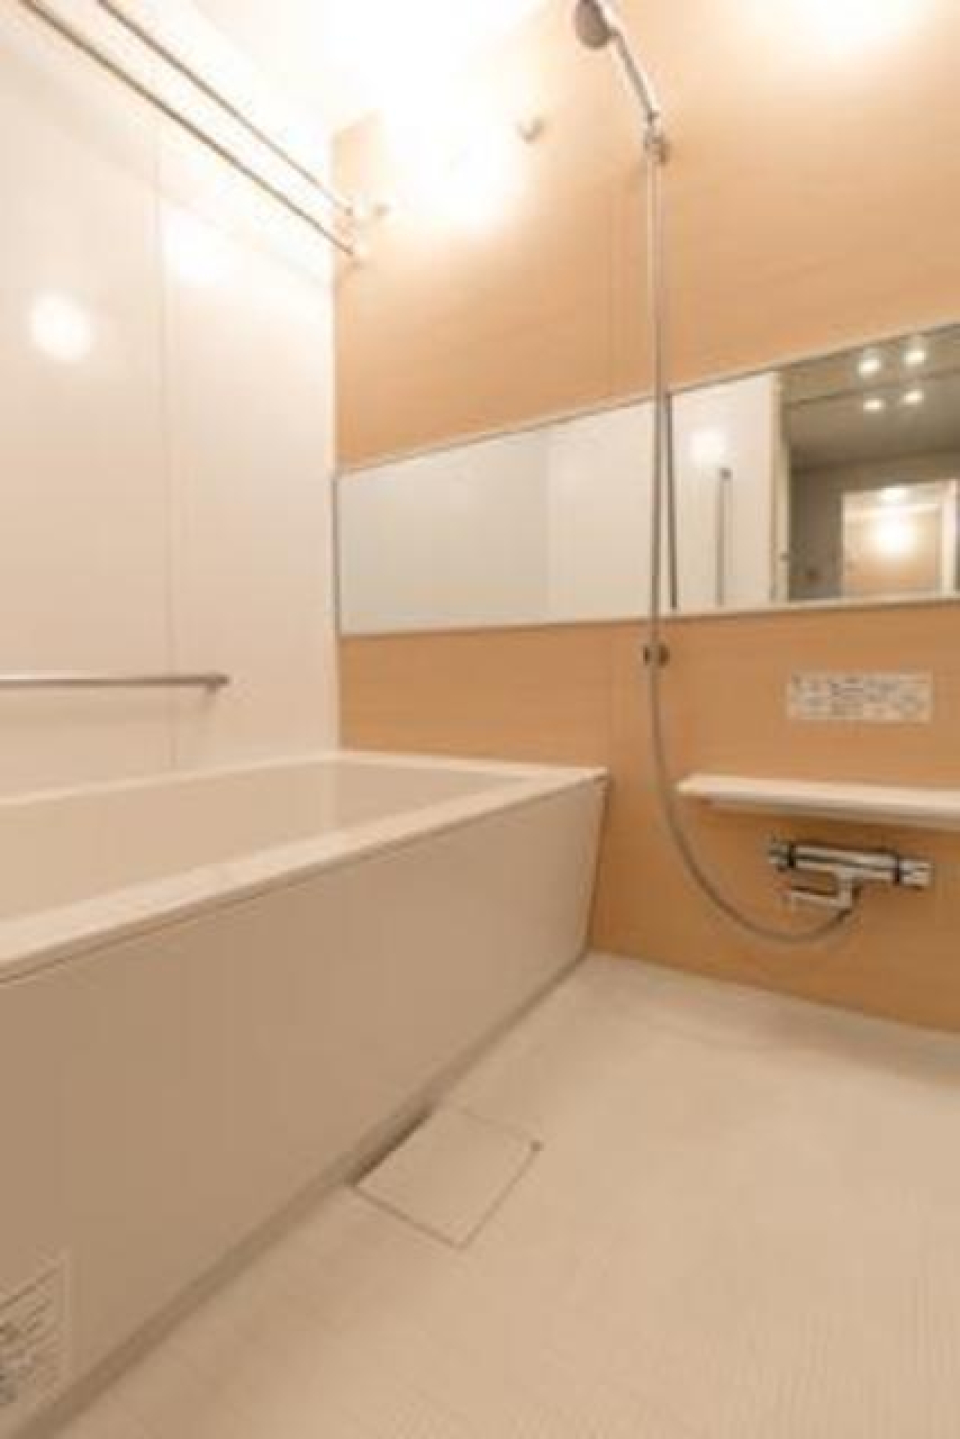 ナチュラルなパネルで優しい雰囲気のする浴室です。※写真は同タイプ住戸です。